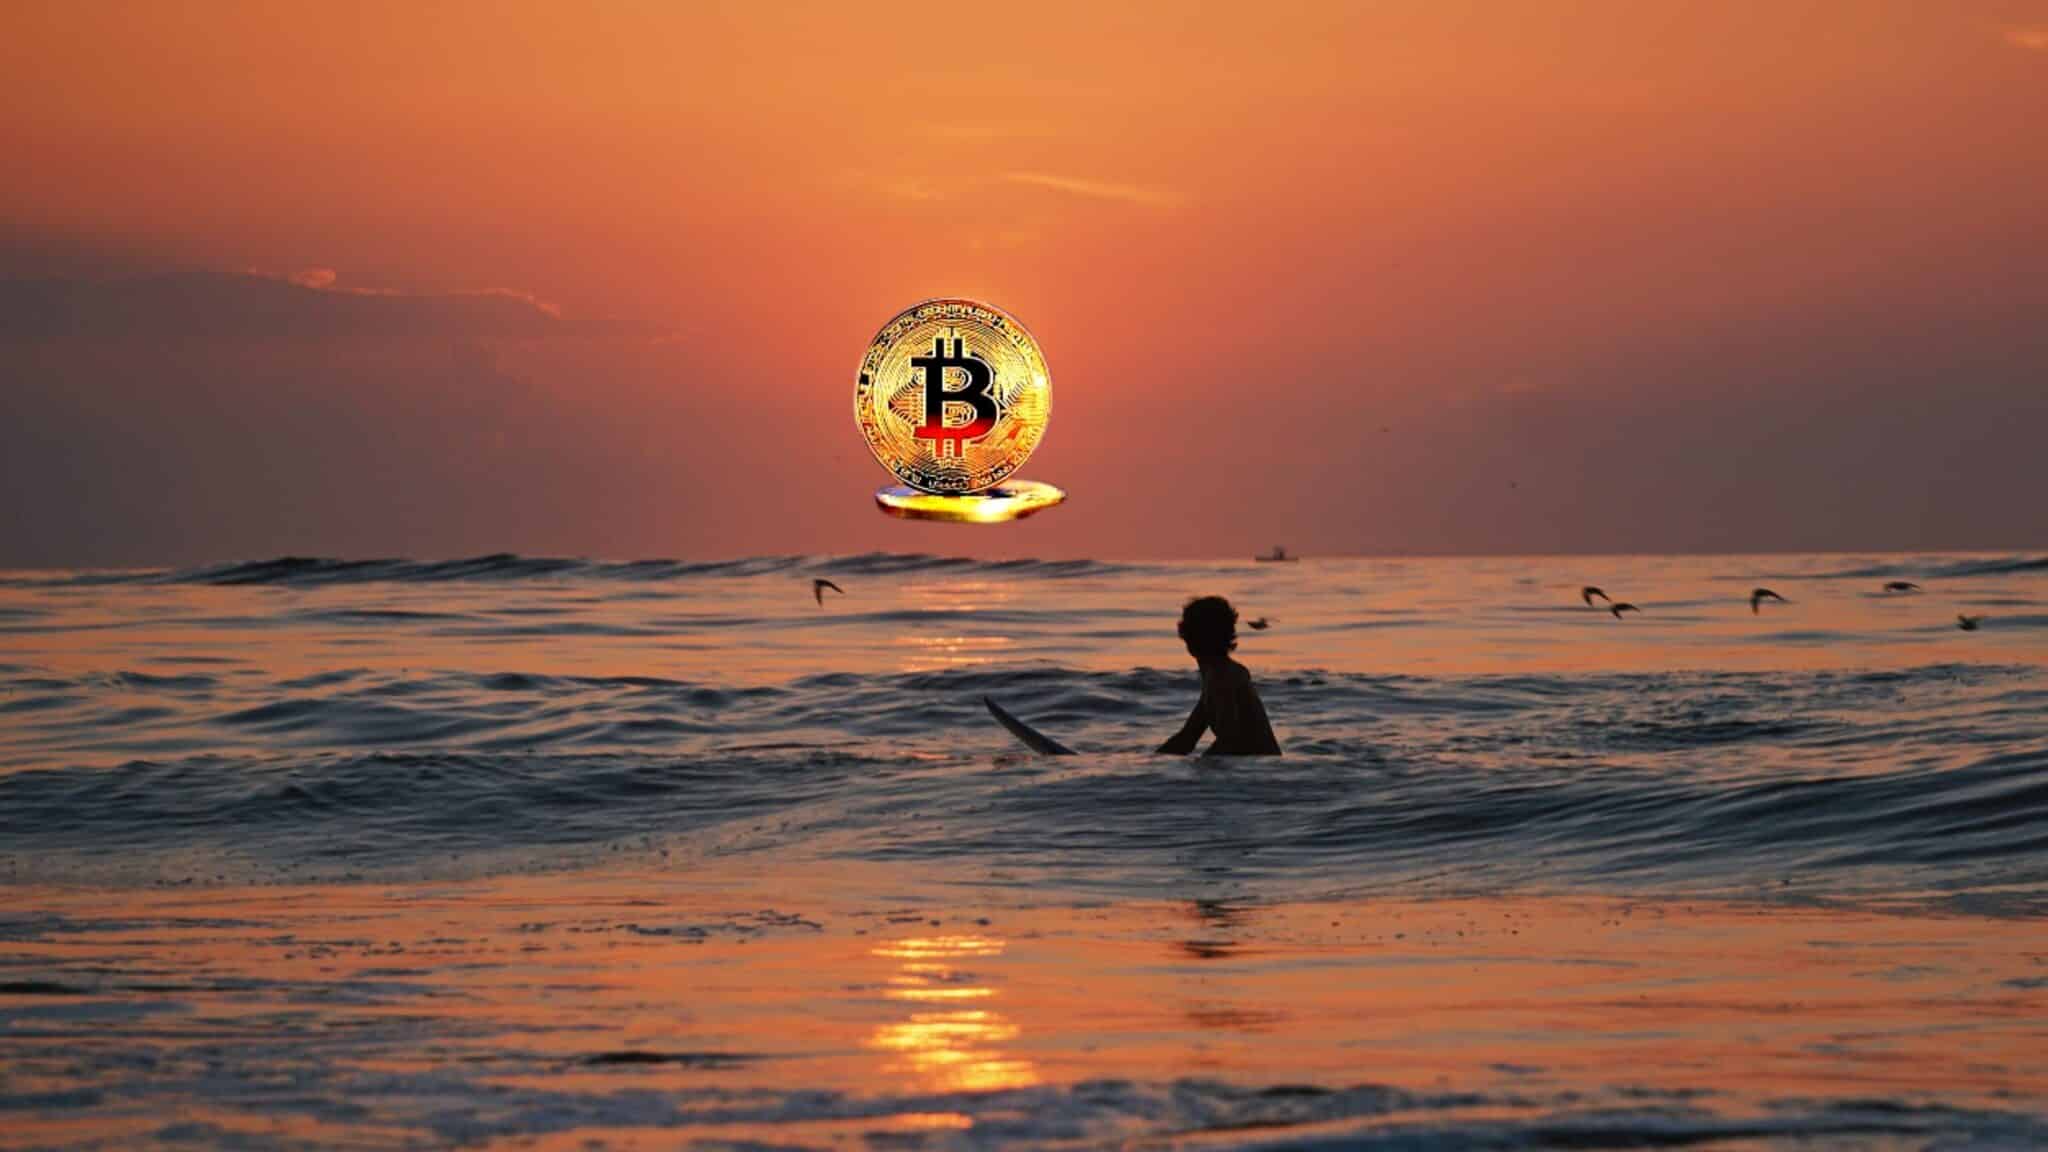 Bitcoin-beach-salvador fdsfdsf